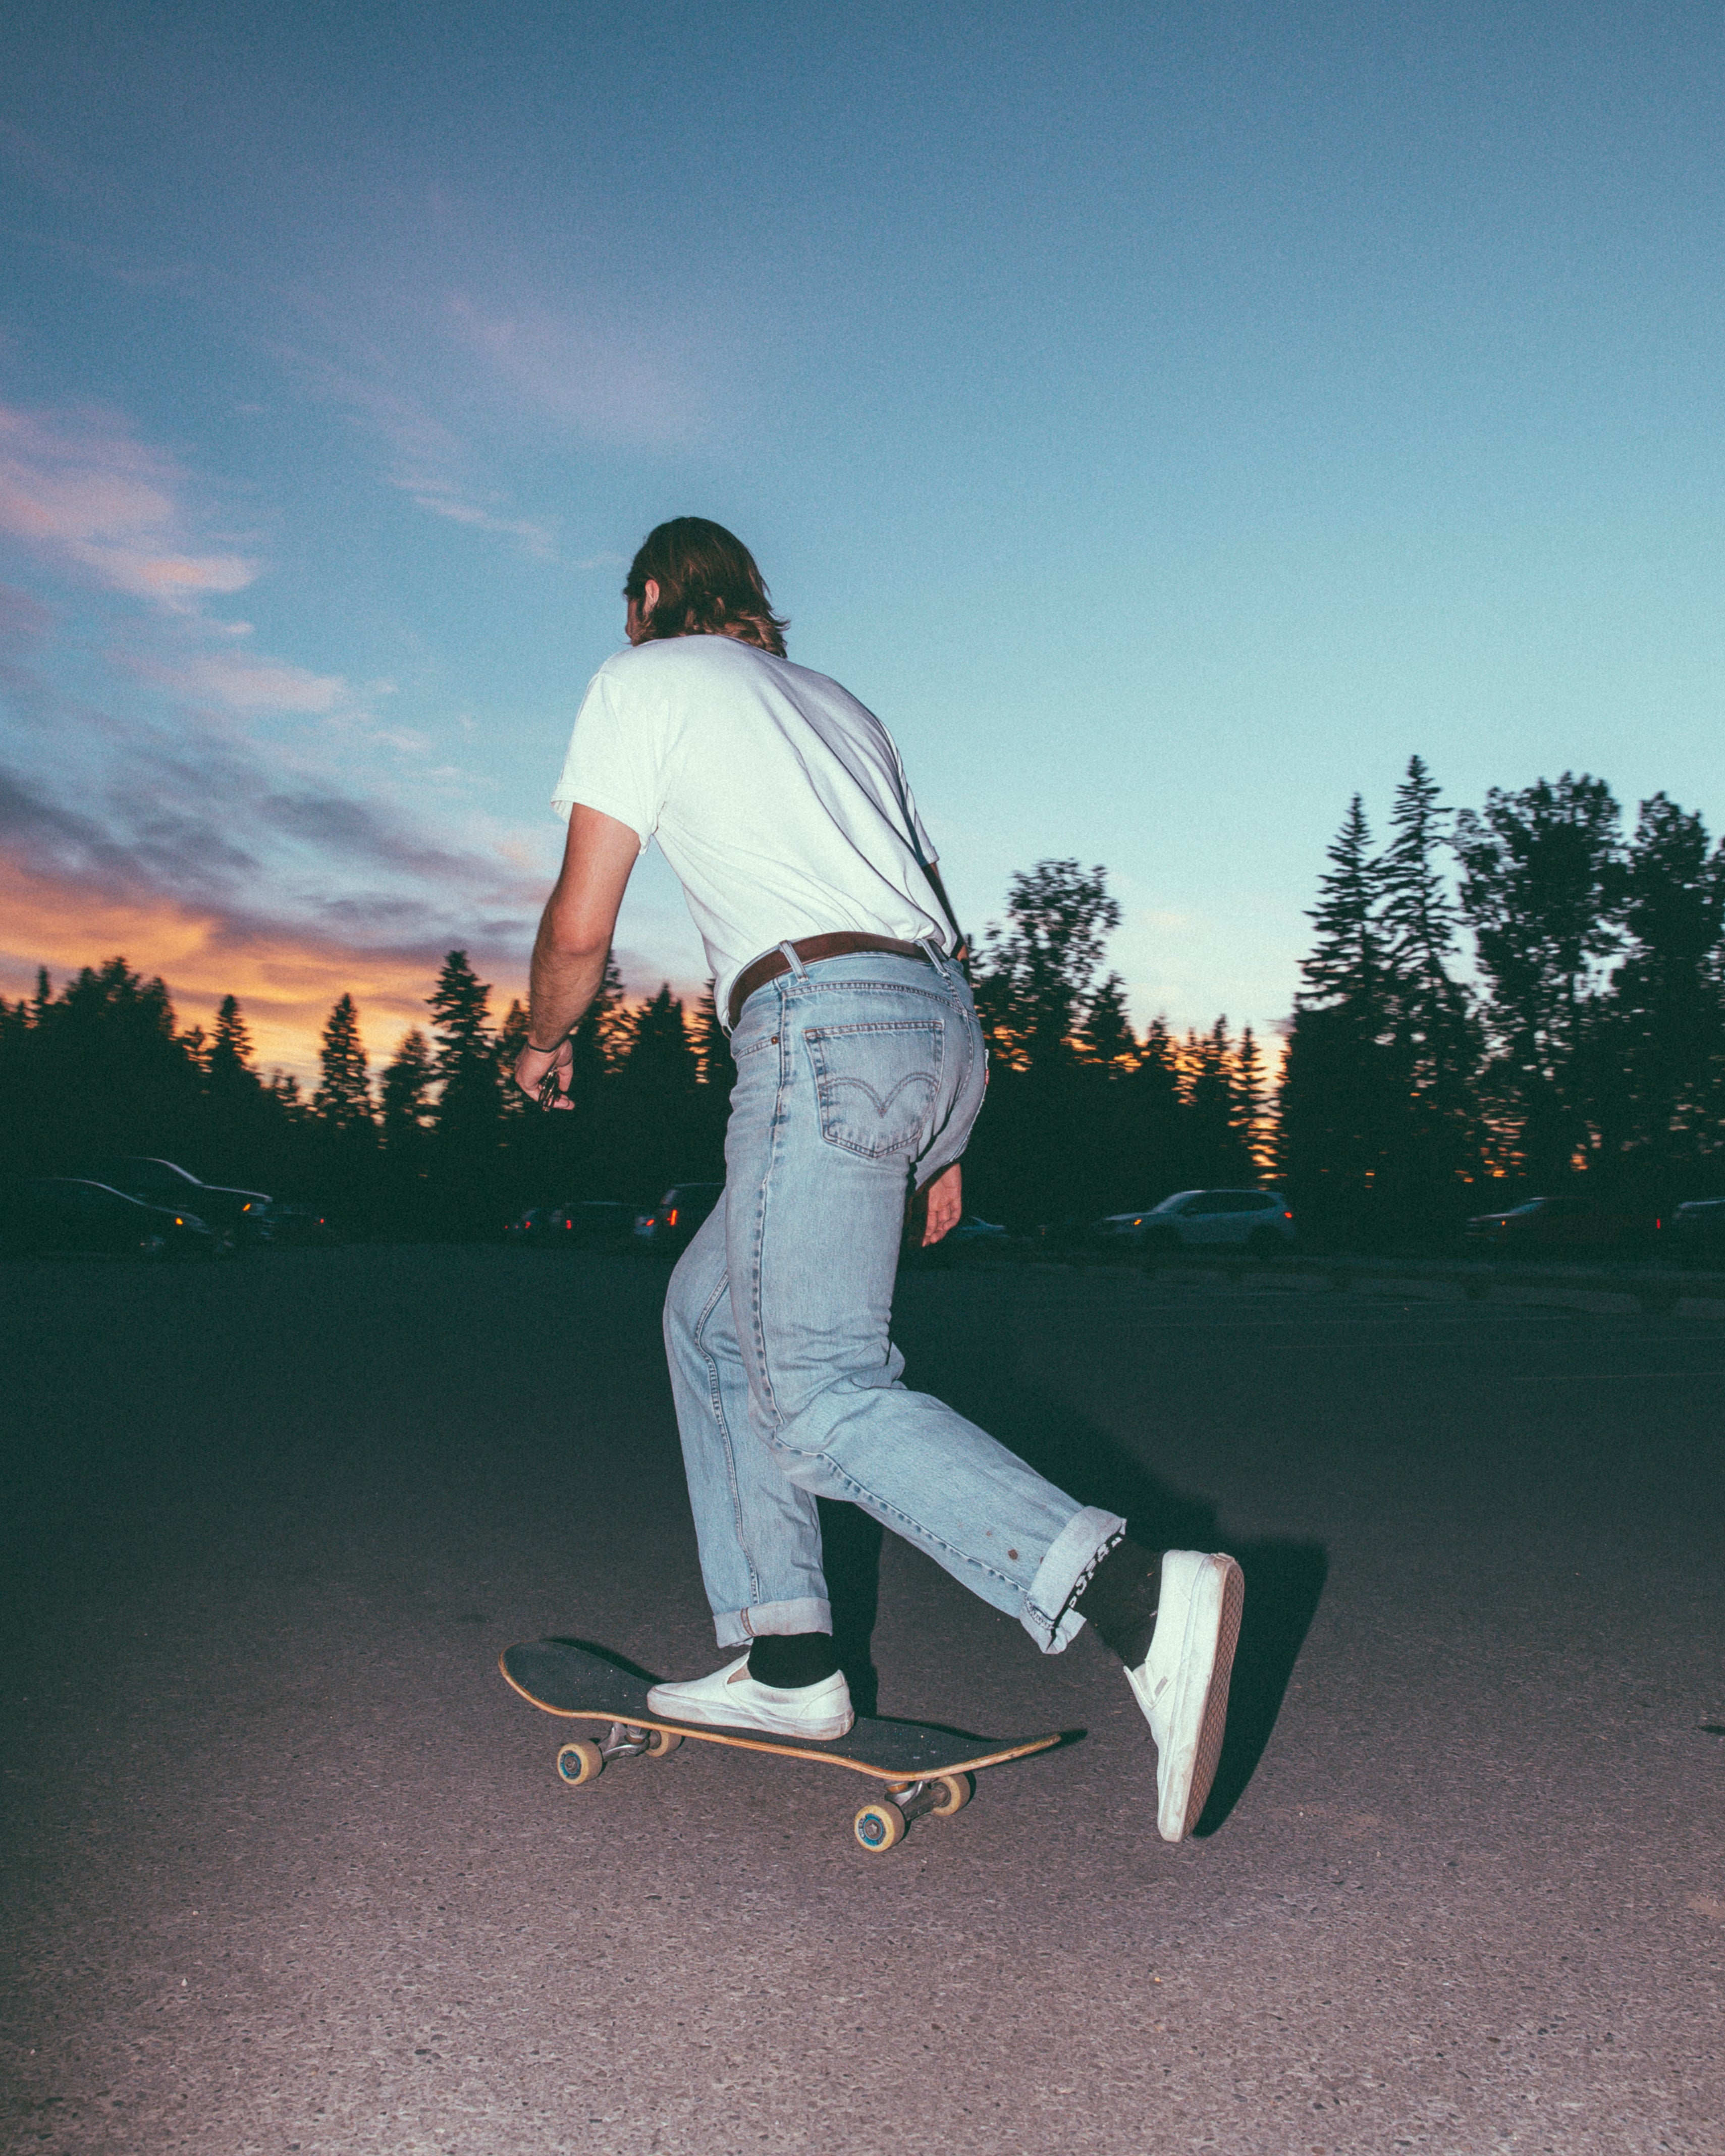 man pushing on skateboard at sunset